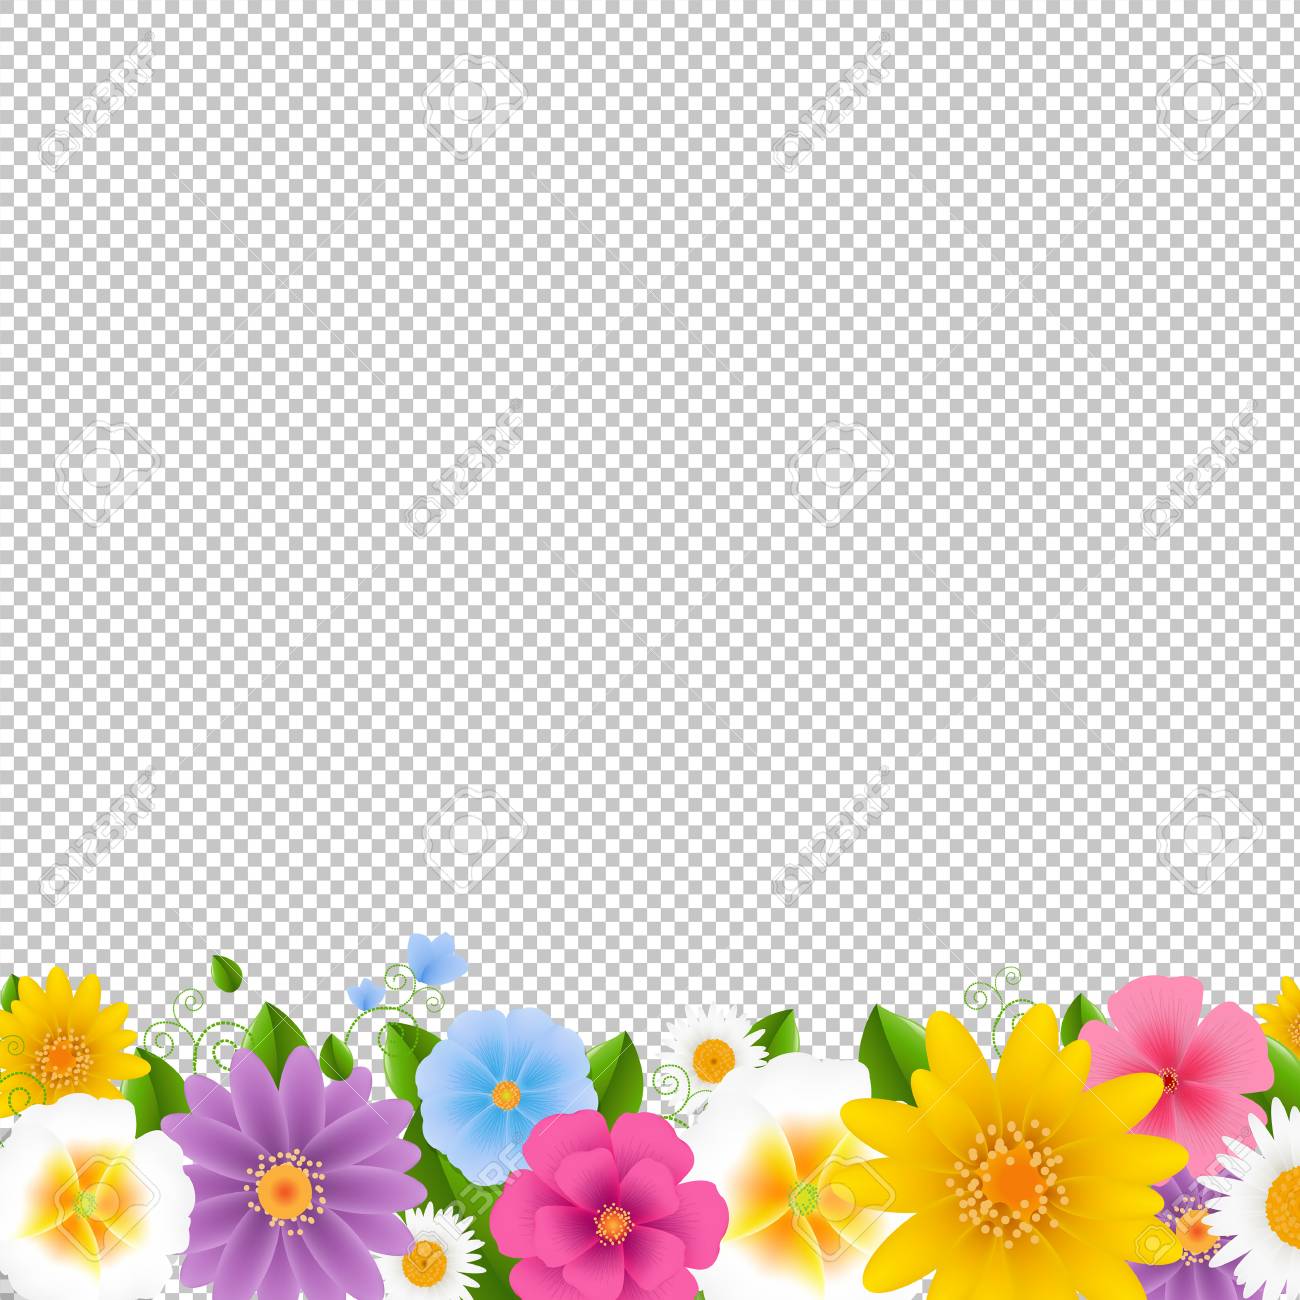 Flower Border Transparent Background